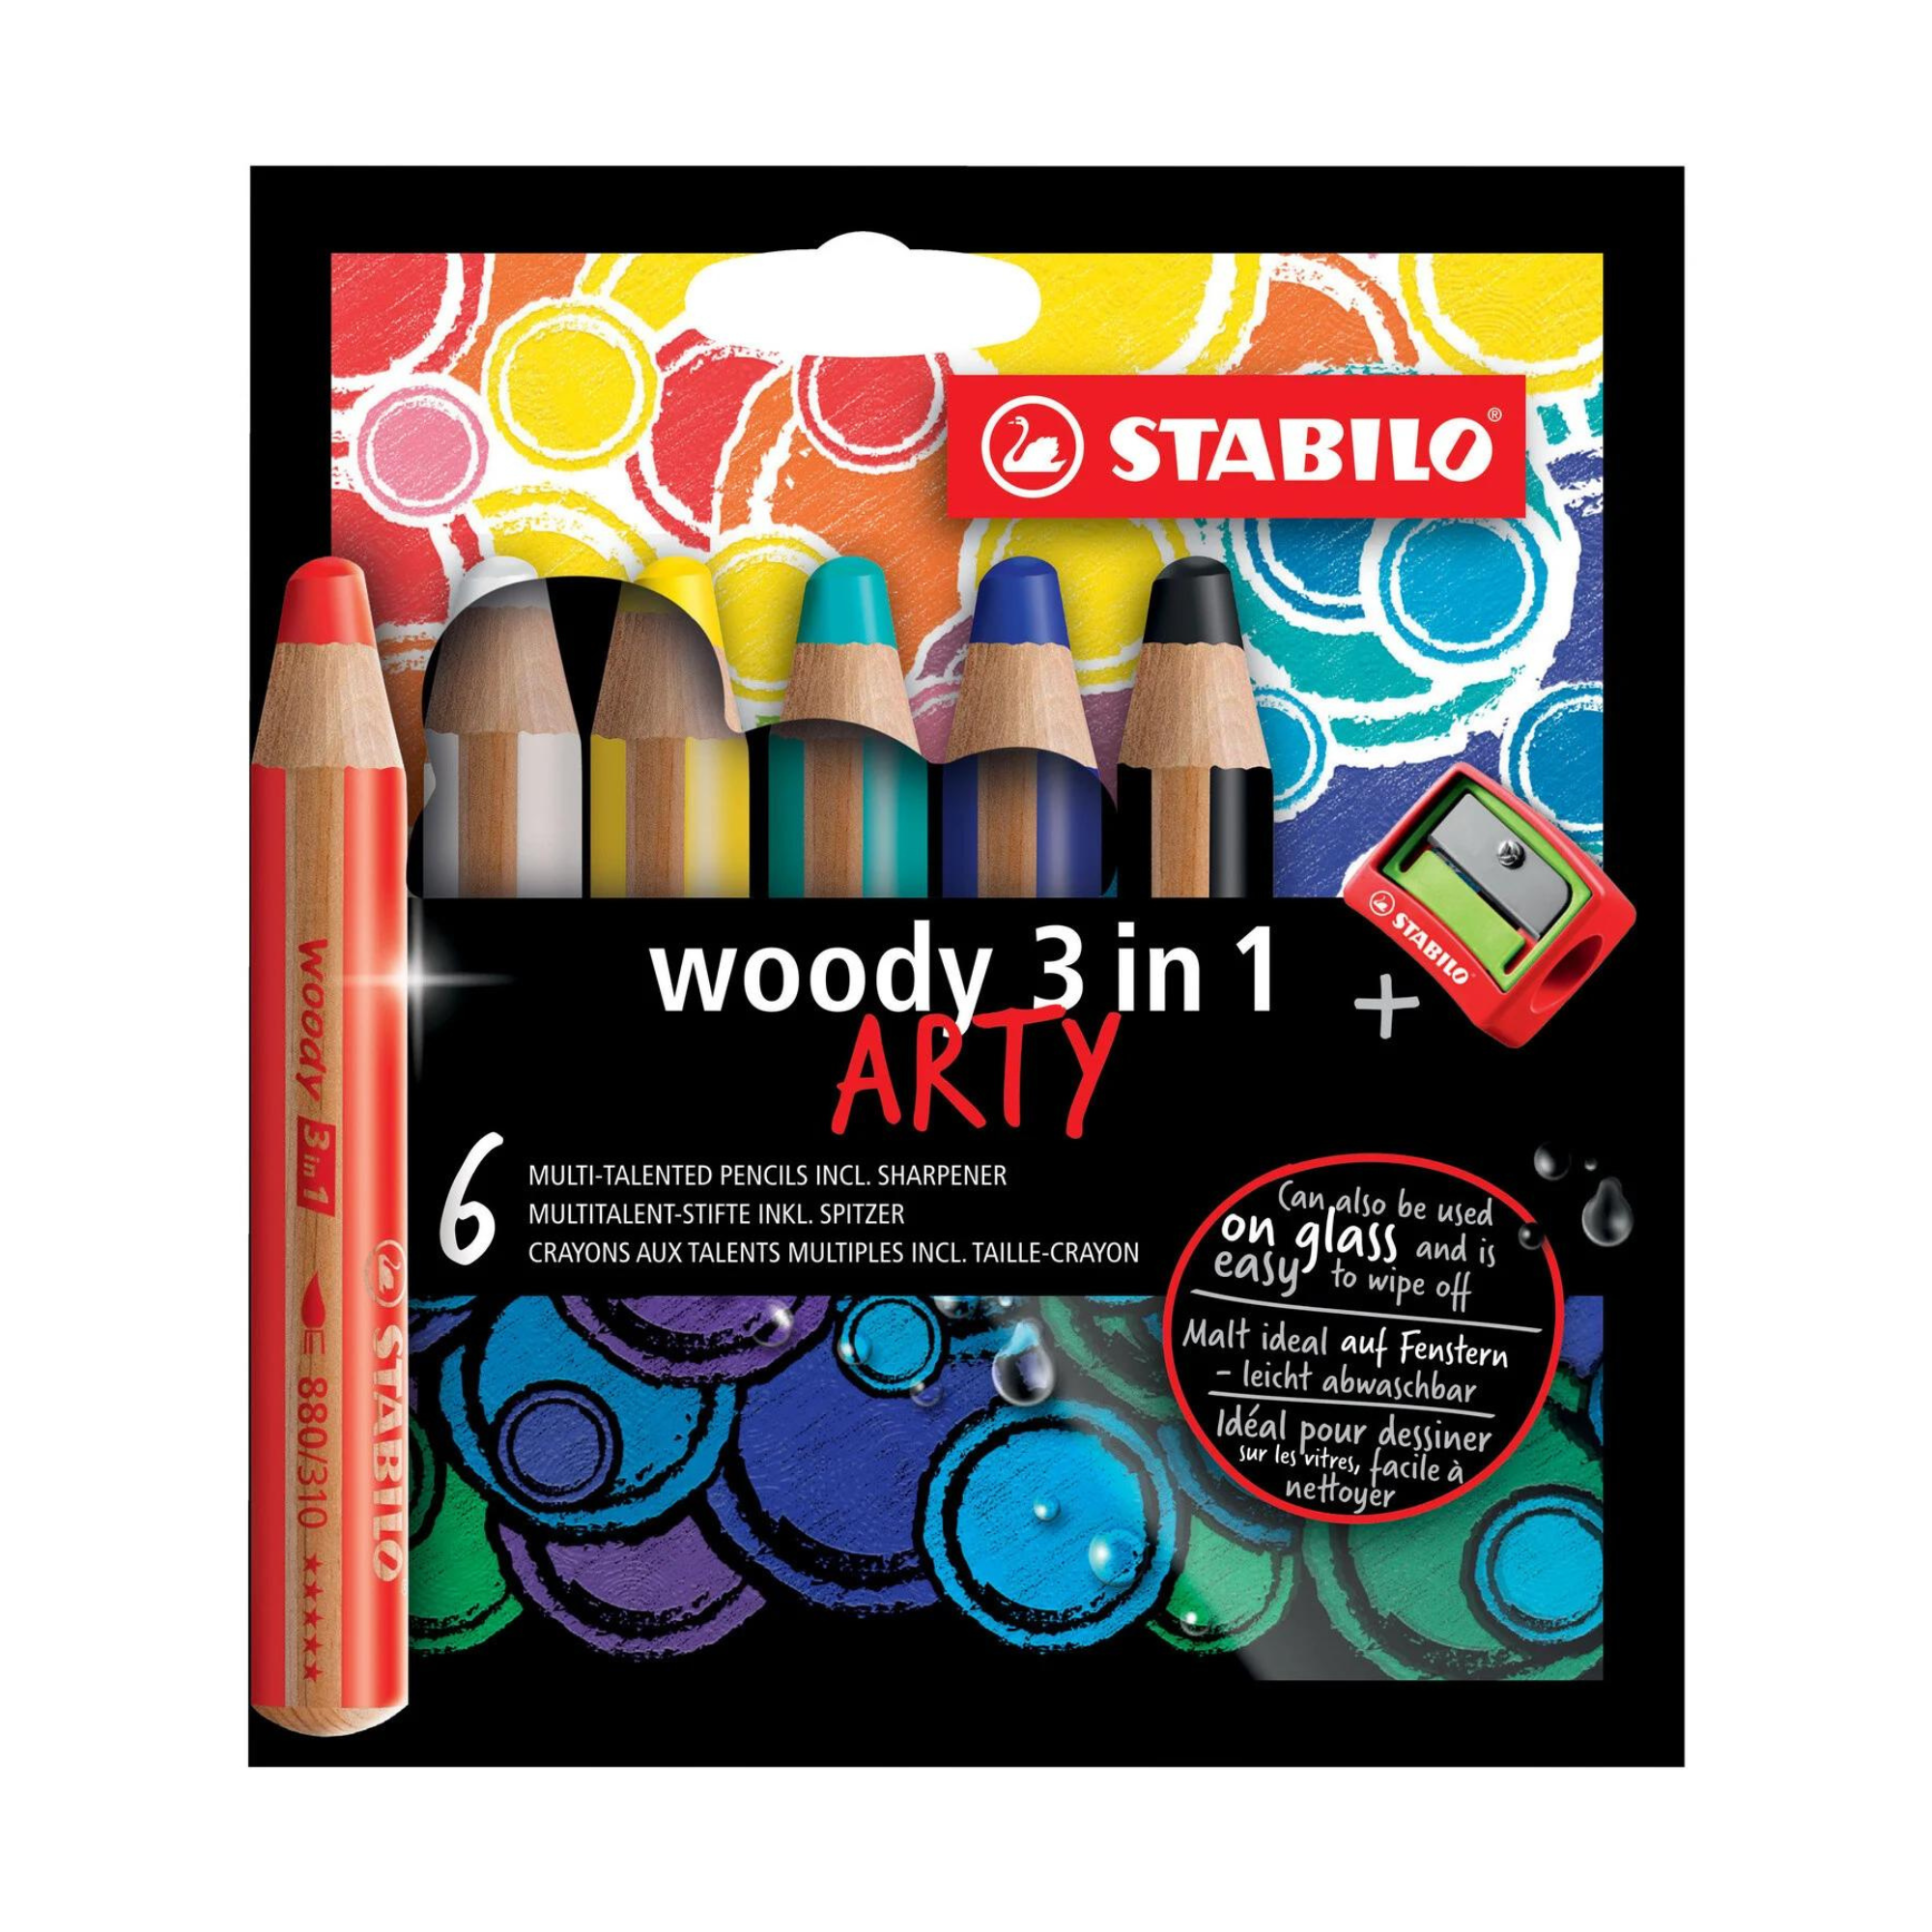 Crayons de Couleur Enfant - Coloriage - Drawin'Kids